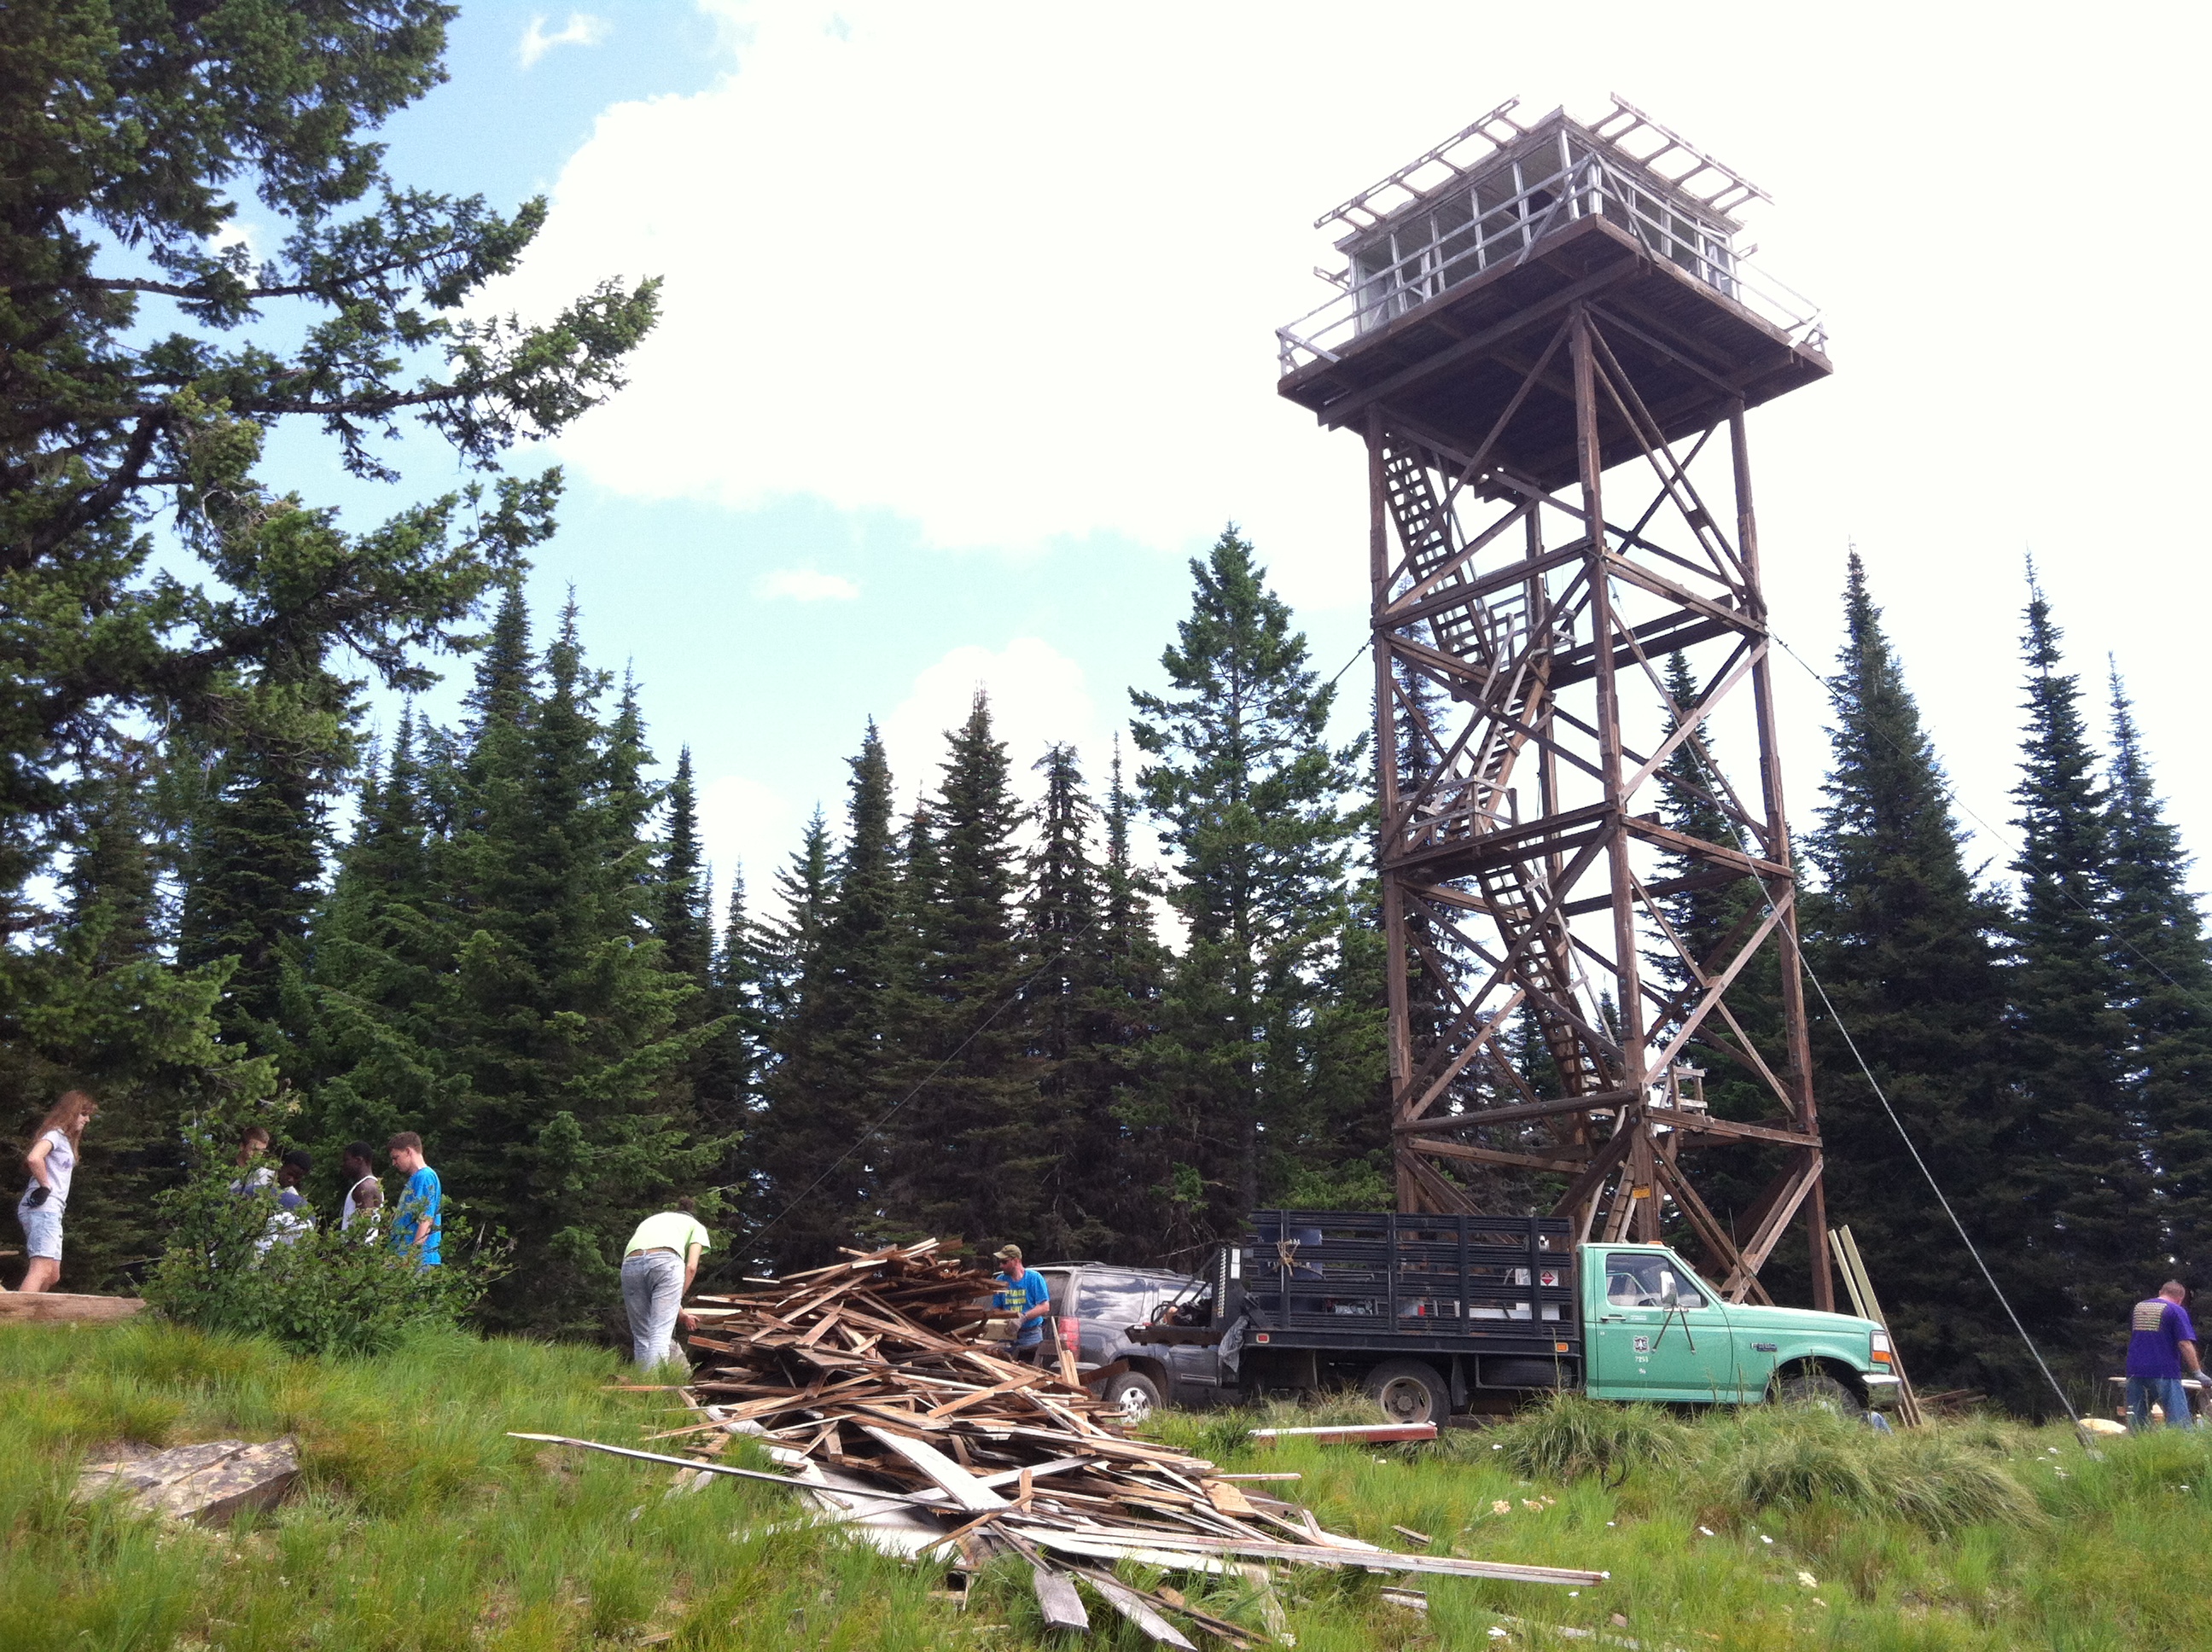 Volunteers work on Spyglass Peak renovating historic buildings and repairing vandalism.